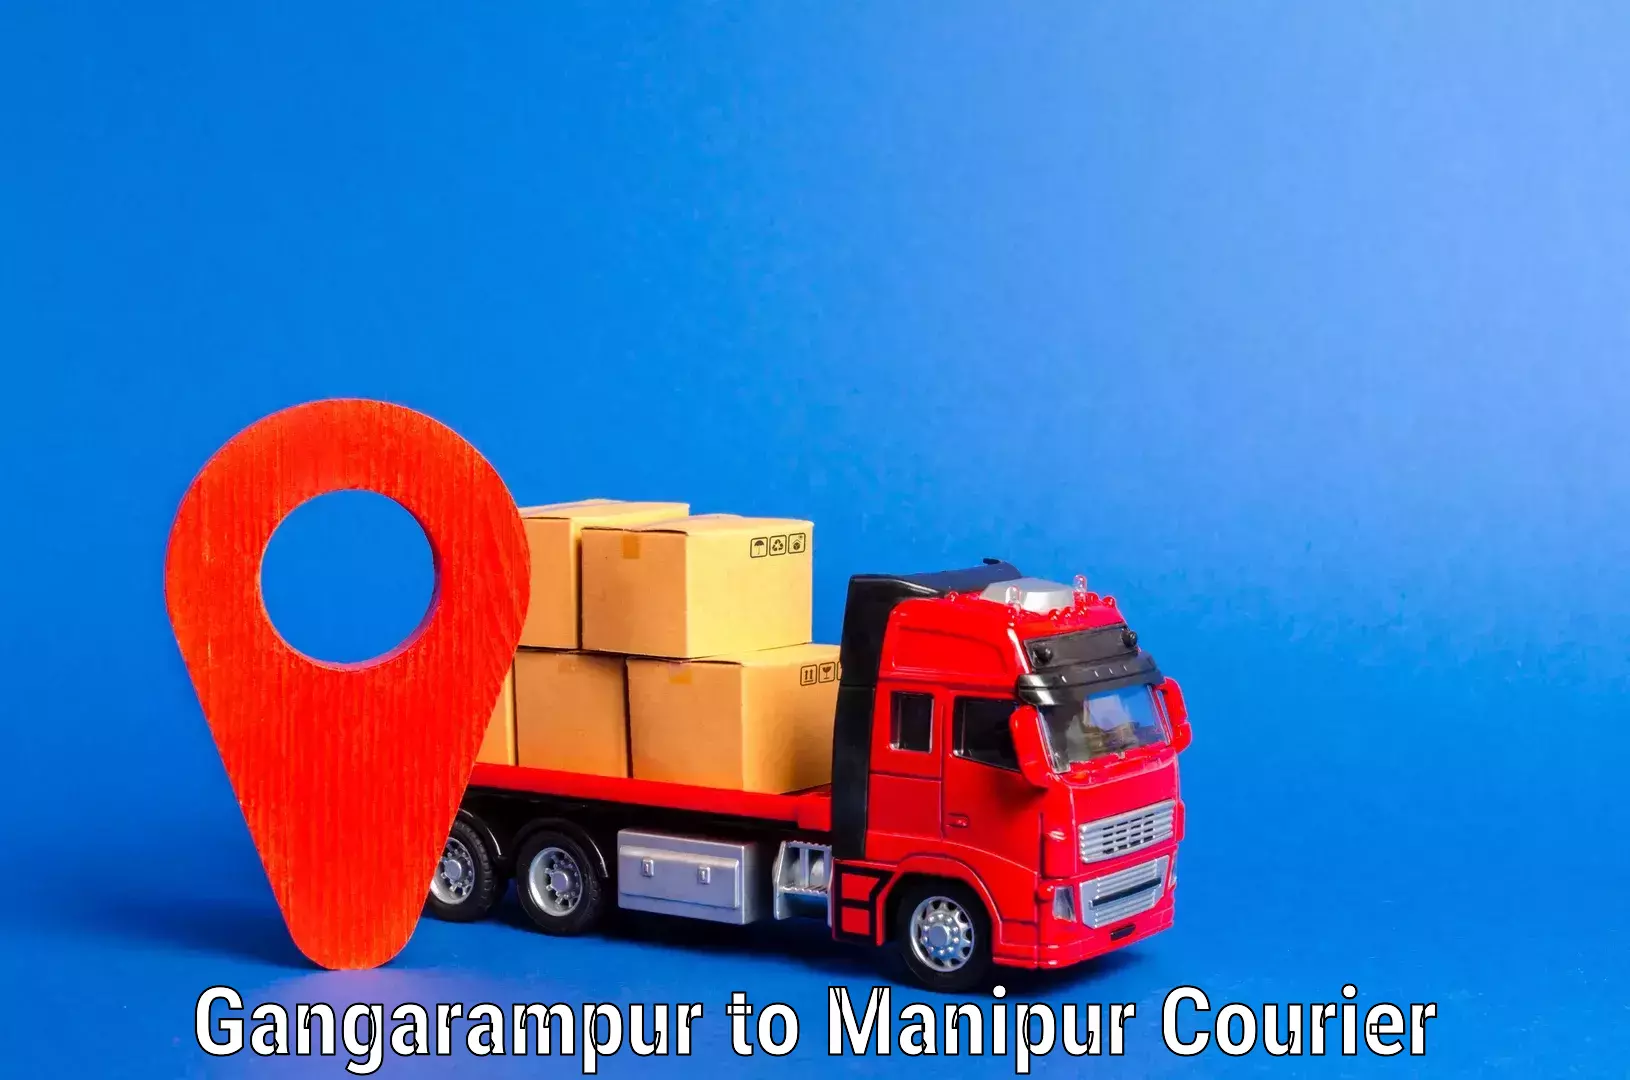 Furniture moving experts Gangarampur to Manipur